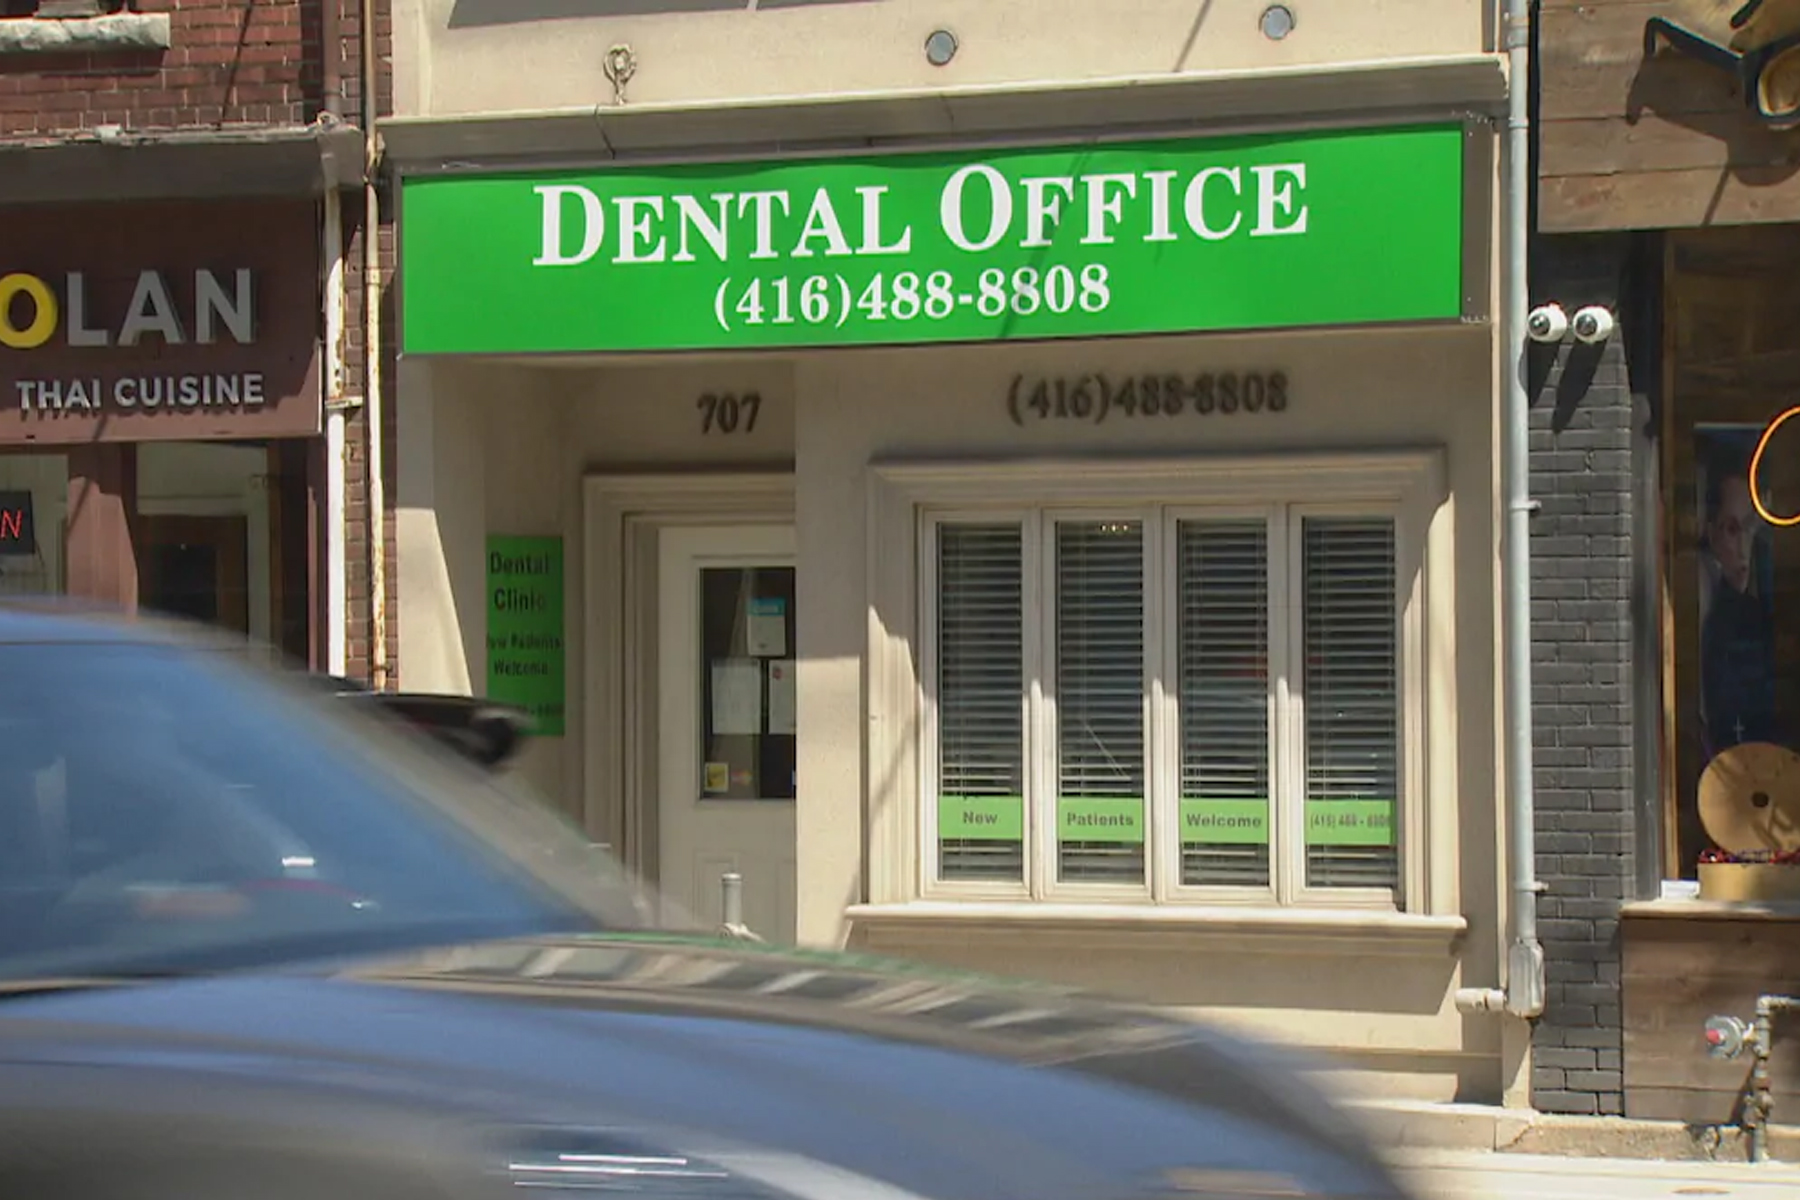 ممنوعیت درمان بیماران زیر 18 سال برای دندانپزشک تورنتویی که متهم به تجاوز جنسی بود